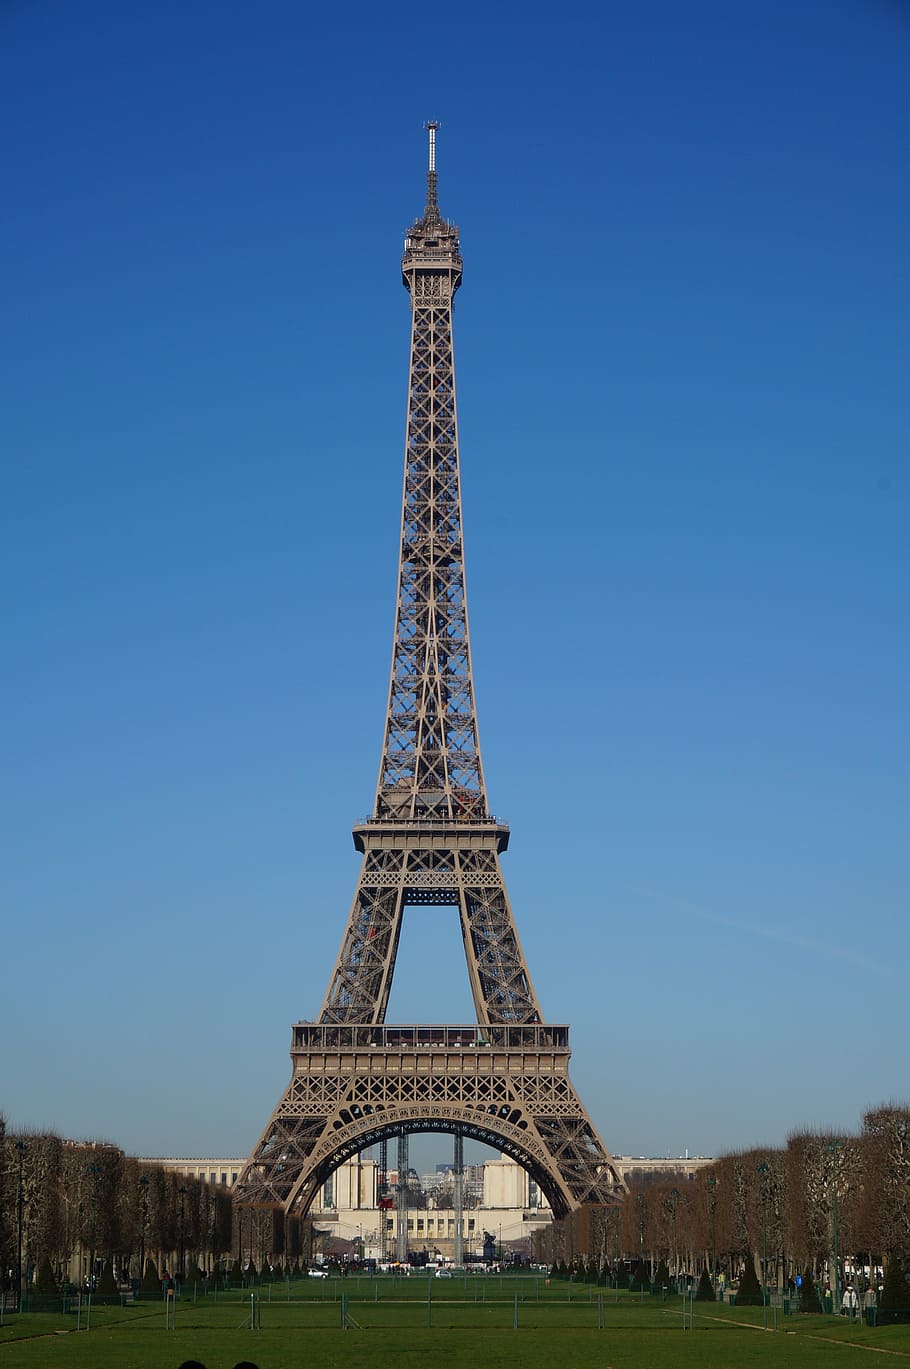 eiffel tower, paris, paris iron tower, landscape, 歐 chau, paris, eiffel Tower, paris - France, france, famous Place, tower